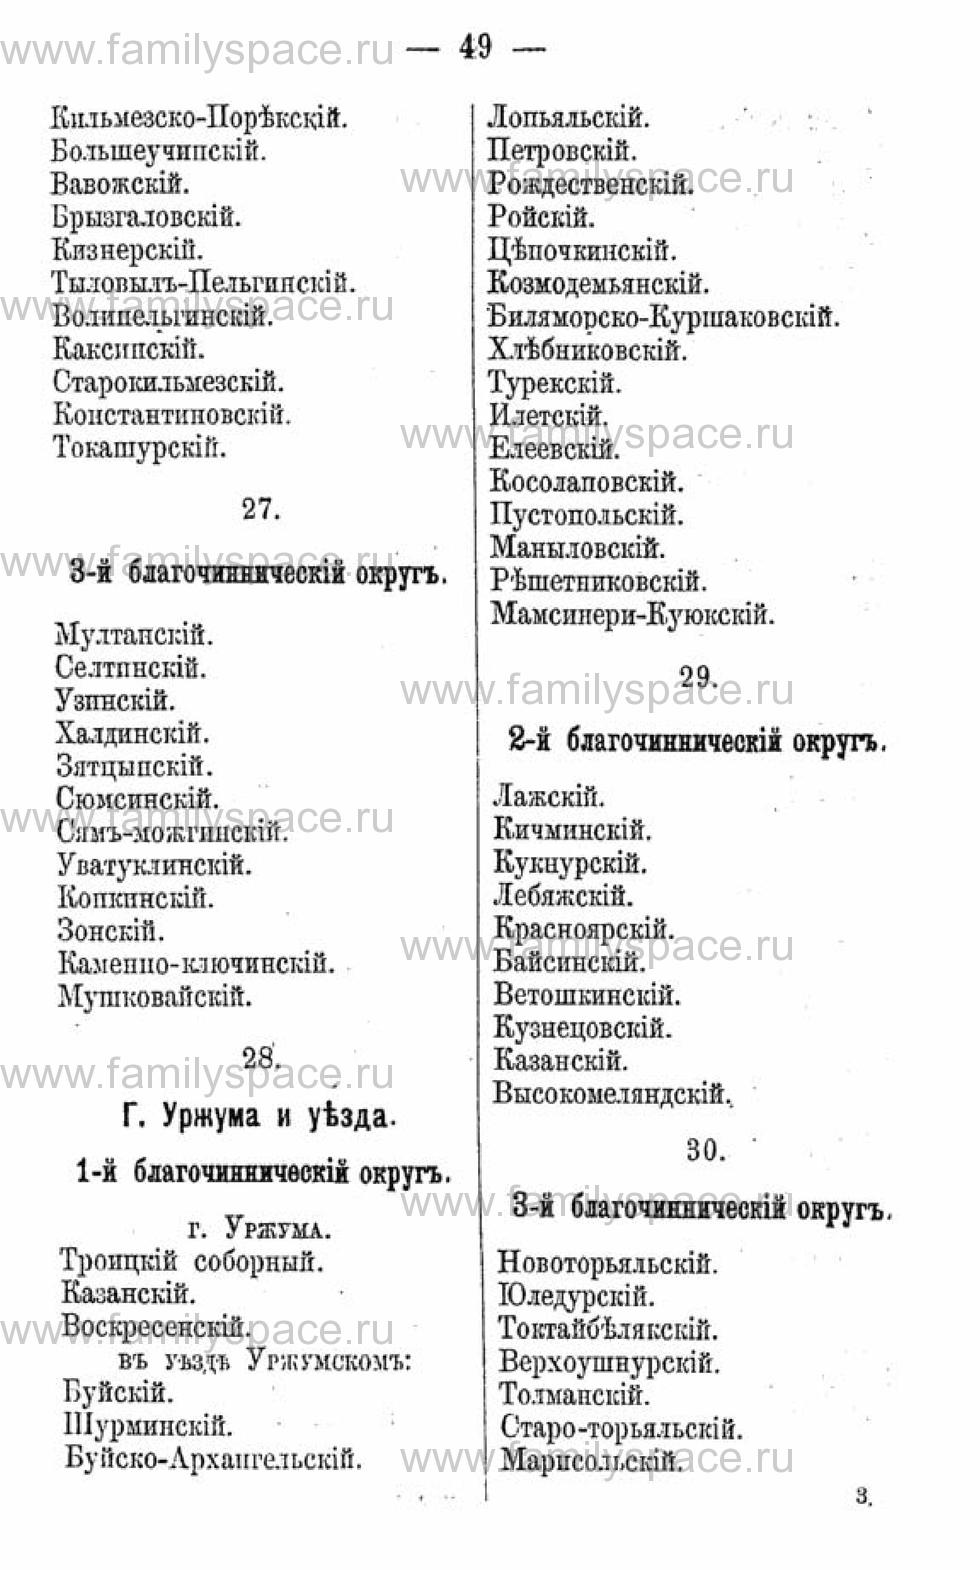 Поиск по фамилии - Календарь Вятской губернии - 1880, страница 1049